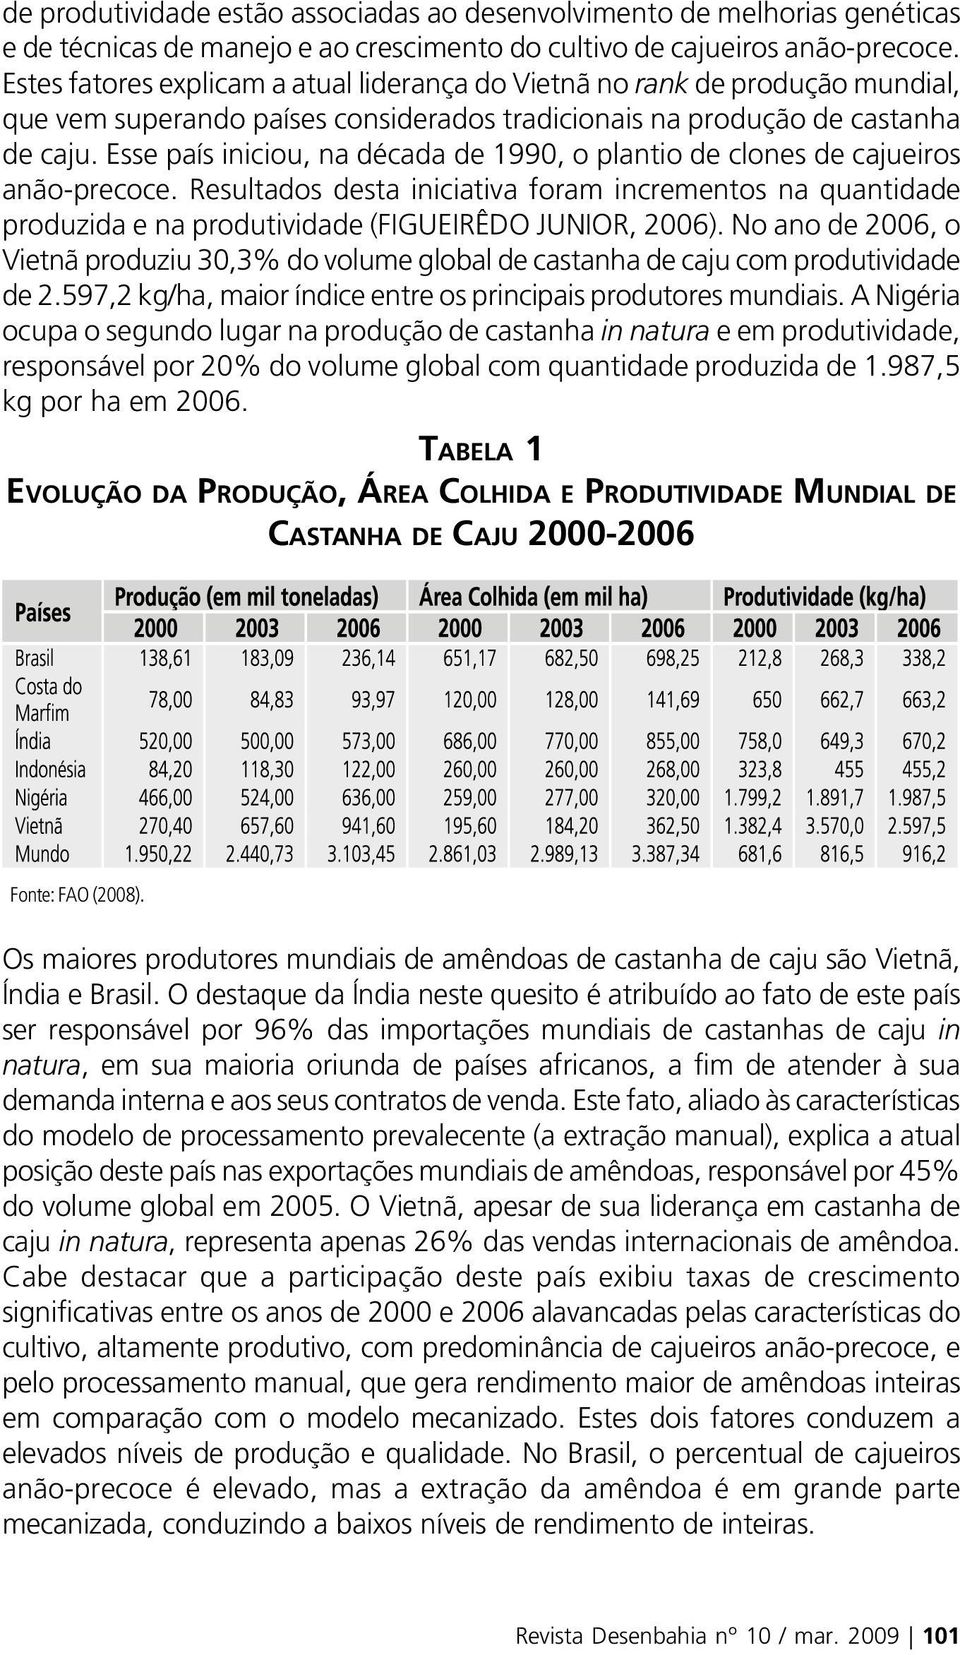 Esse país iniciou, na década de 1990, o plantio de clones de cajueiros anão-precoce. Resultados desta iniciativa foram incrementos na quantidade produzida e na produtividade (FIGUEIRÊDO JUNIOR, 2006).